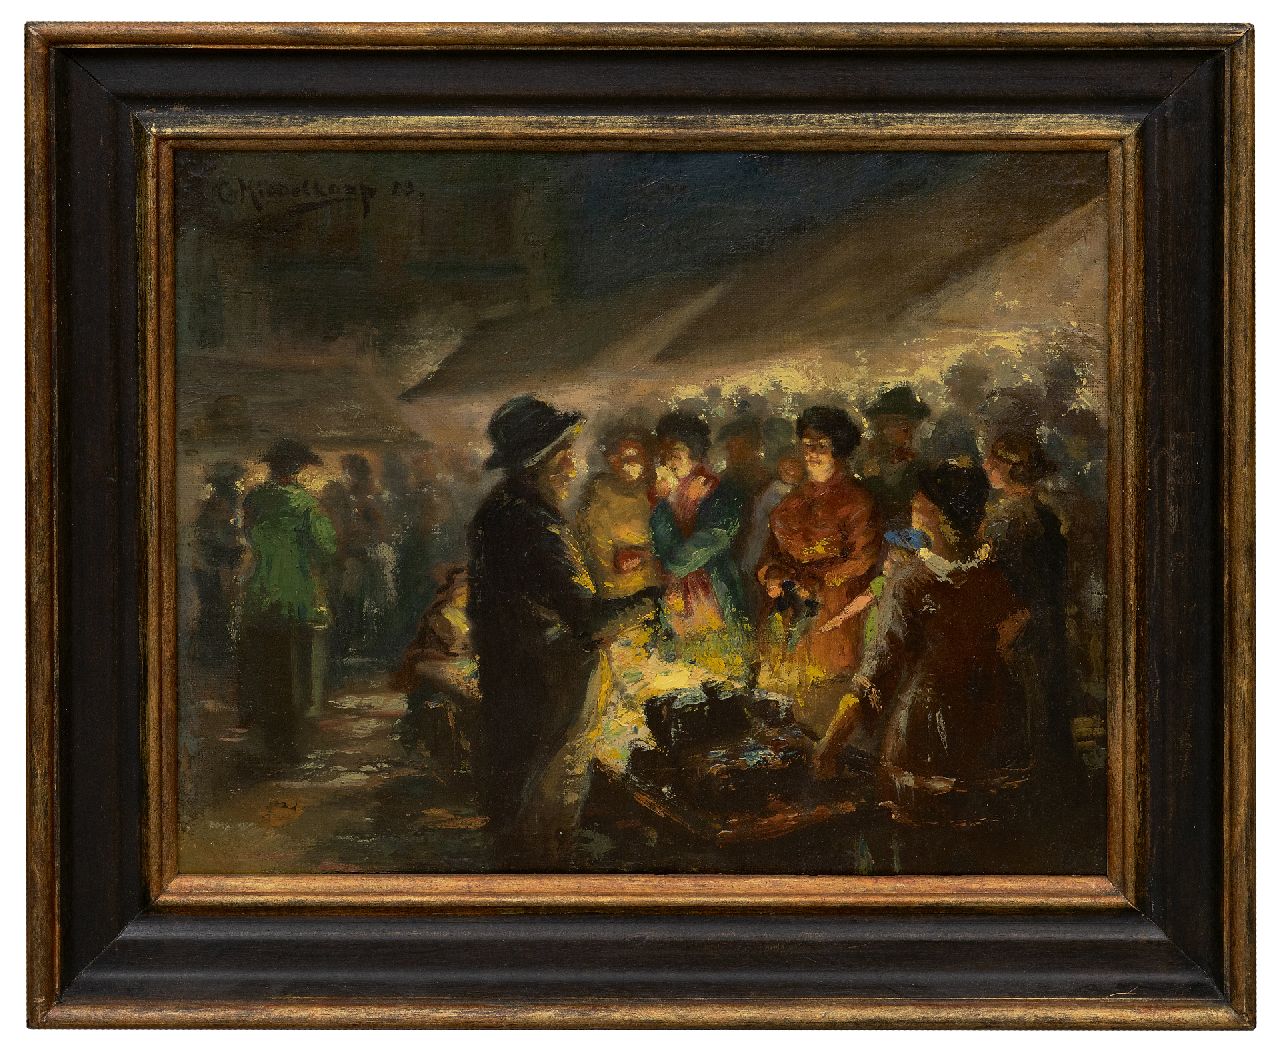 Middelkoop C.H.L.  | Cornelis Helenis Lodewijk Middelkoop | Schilderijen te koop aangeboden | Avondmarkt, olieverf op doek 33,0 x 39,9 cm, gesigneerd linksboven en gedateerd '23